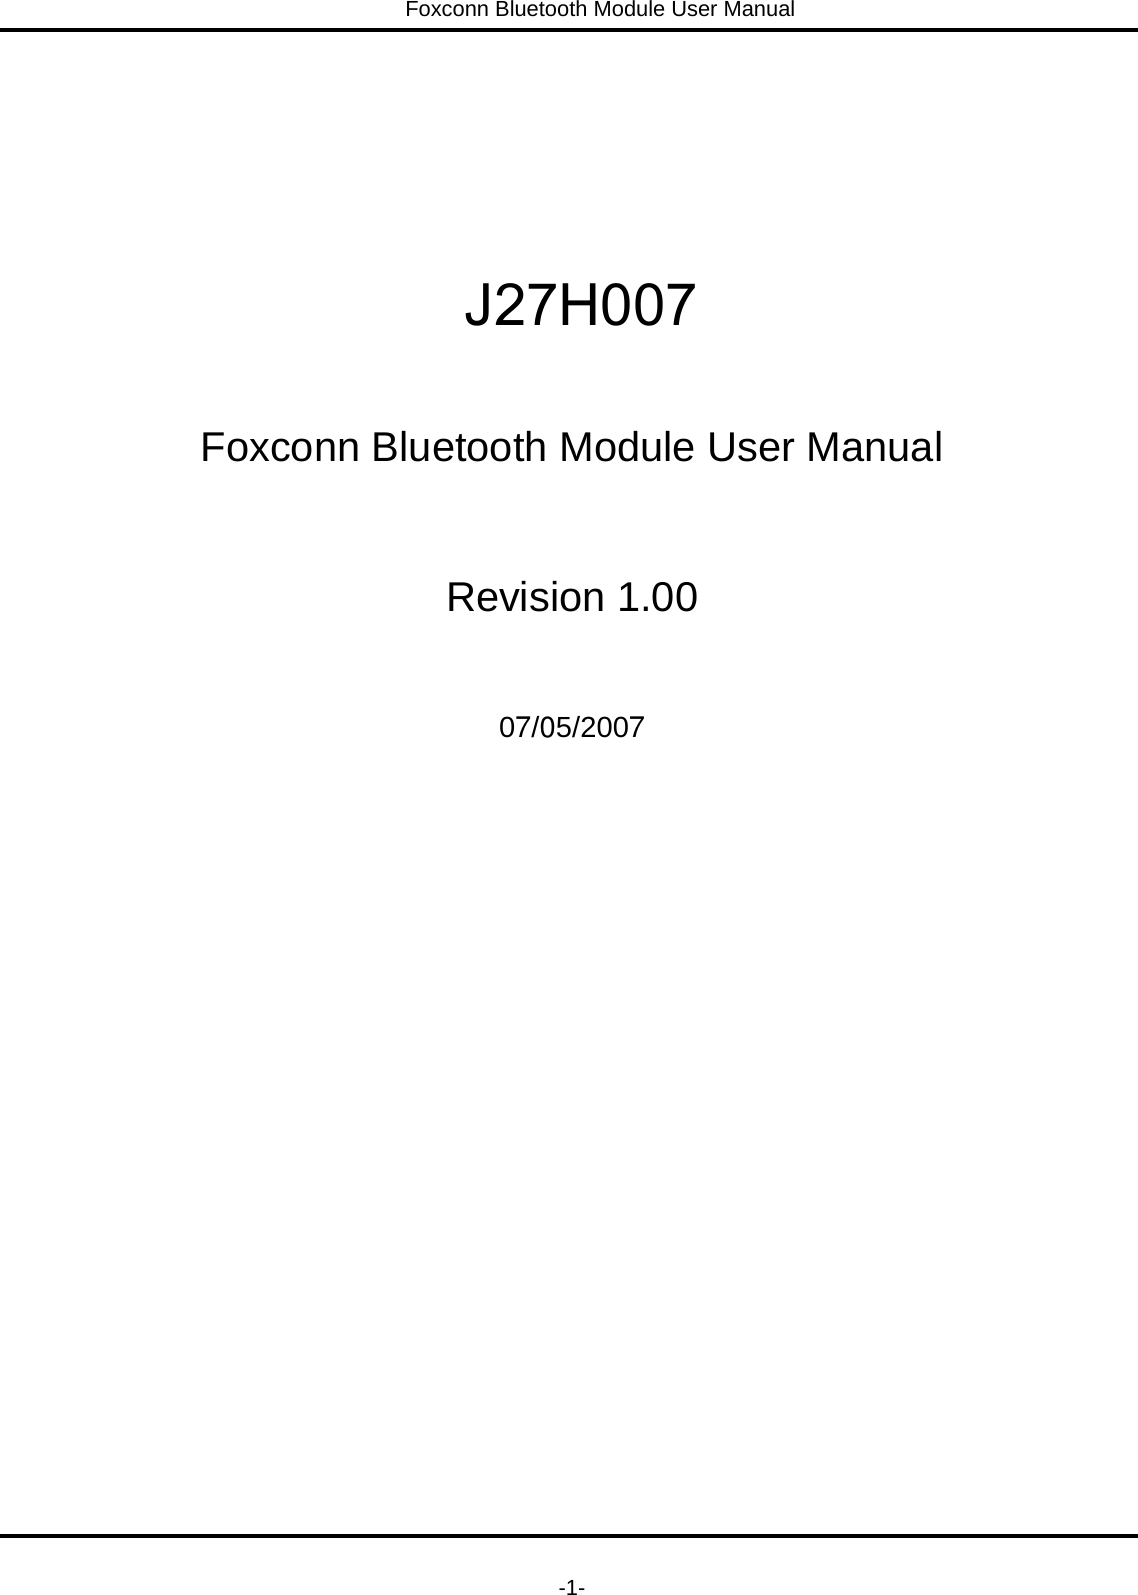 Foxconn Bluetooth Module User Manual   -1-      Foxconn Bluetooth Module User Manual  Revision 1.00  07/05/2007 J27H007